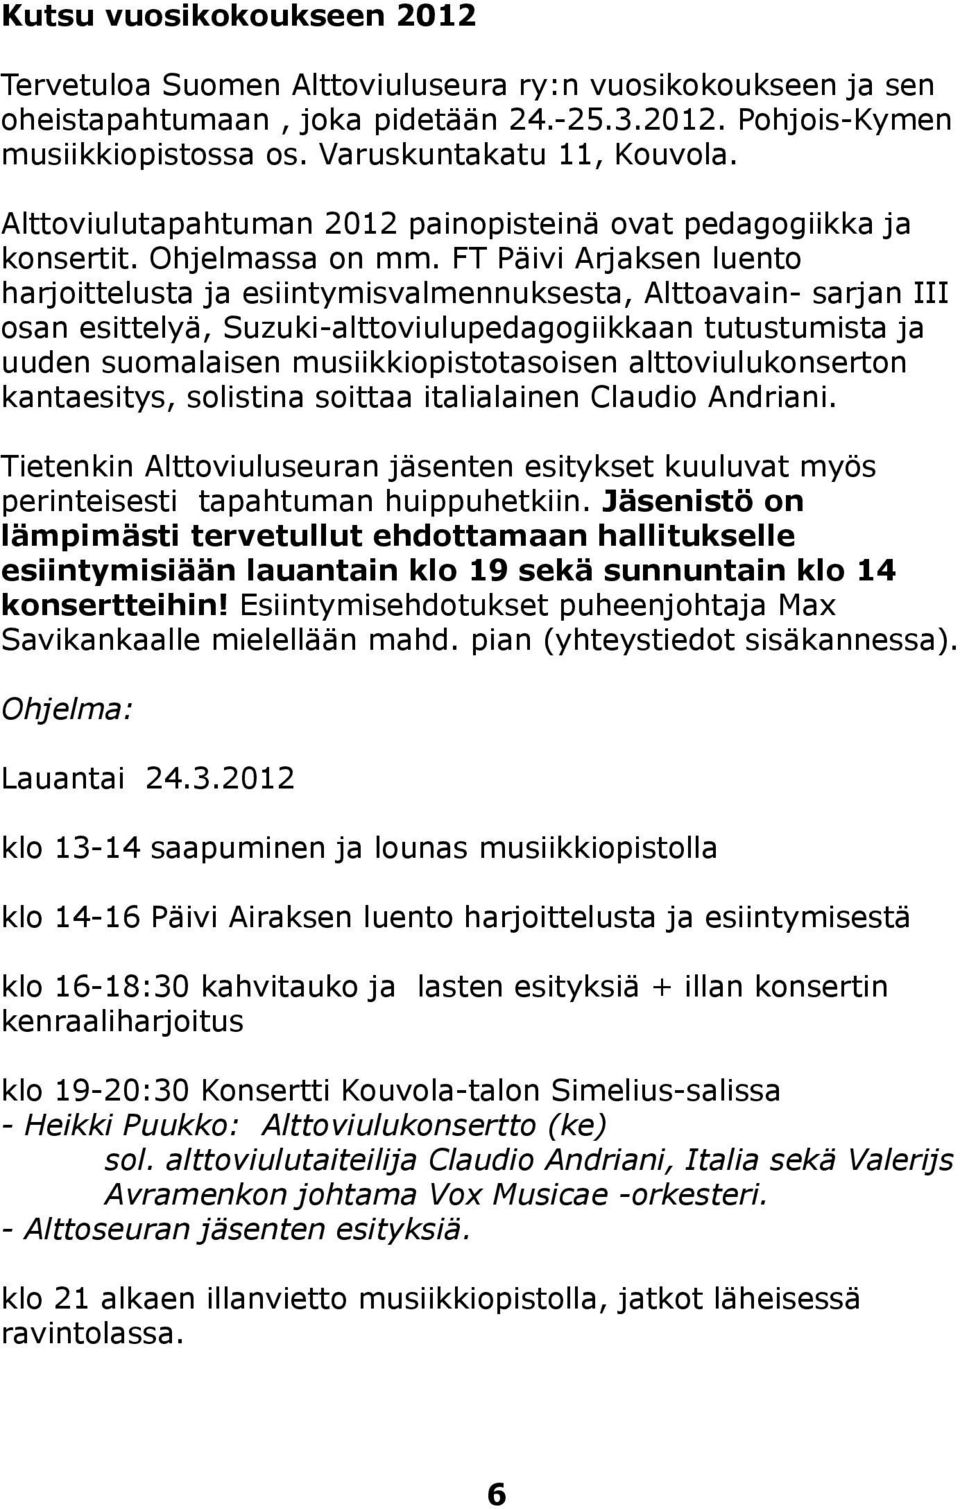 FT Päivi Arjaksen luento harjoittelusta ja esiintymisvalmennuksesta, Alttoavain- sarjan III osan esittelyä, Suzuki-alttoviulupedagogiikkaan tutustumista ja uuden suomalaisen musiikkiopistotasoisen